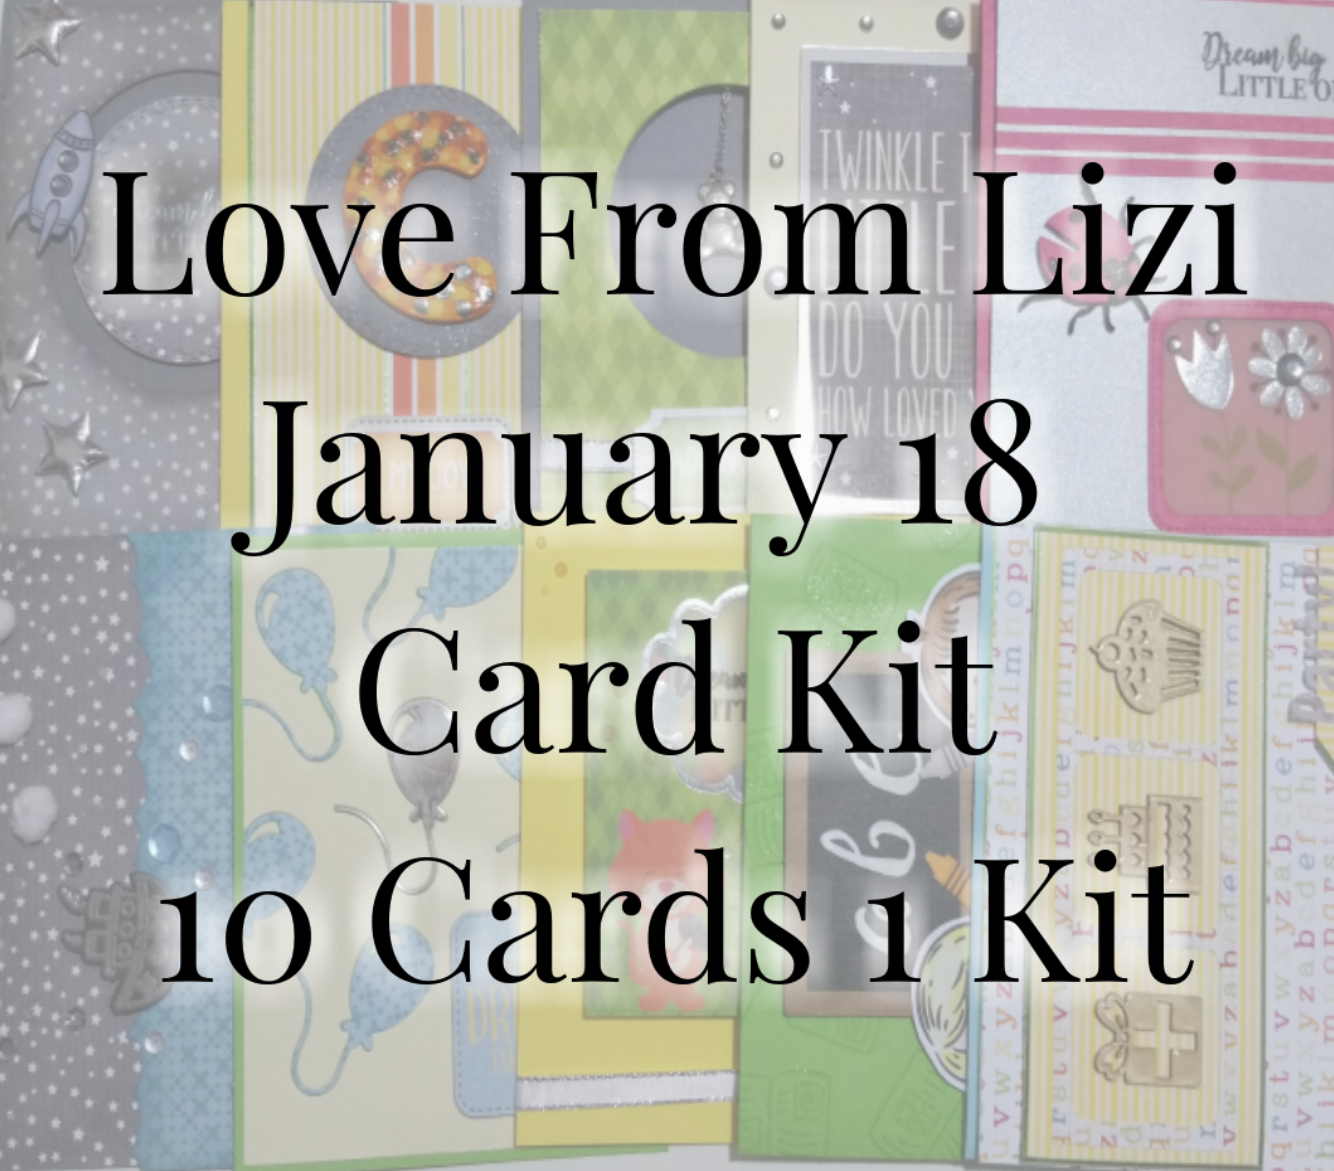 Happy New Year! 10 Cards 1 Kit - January 2018